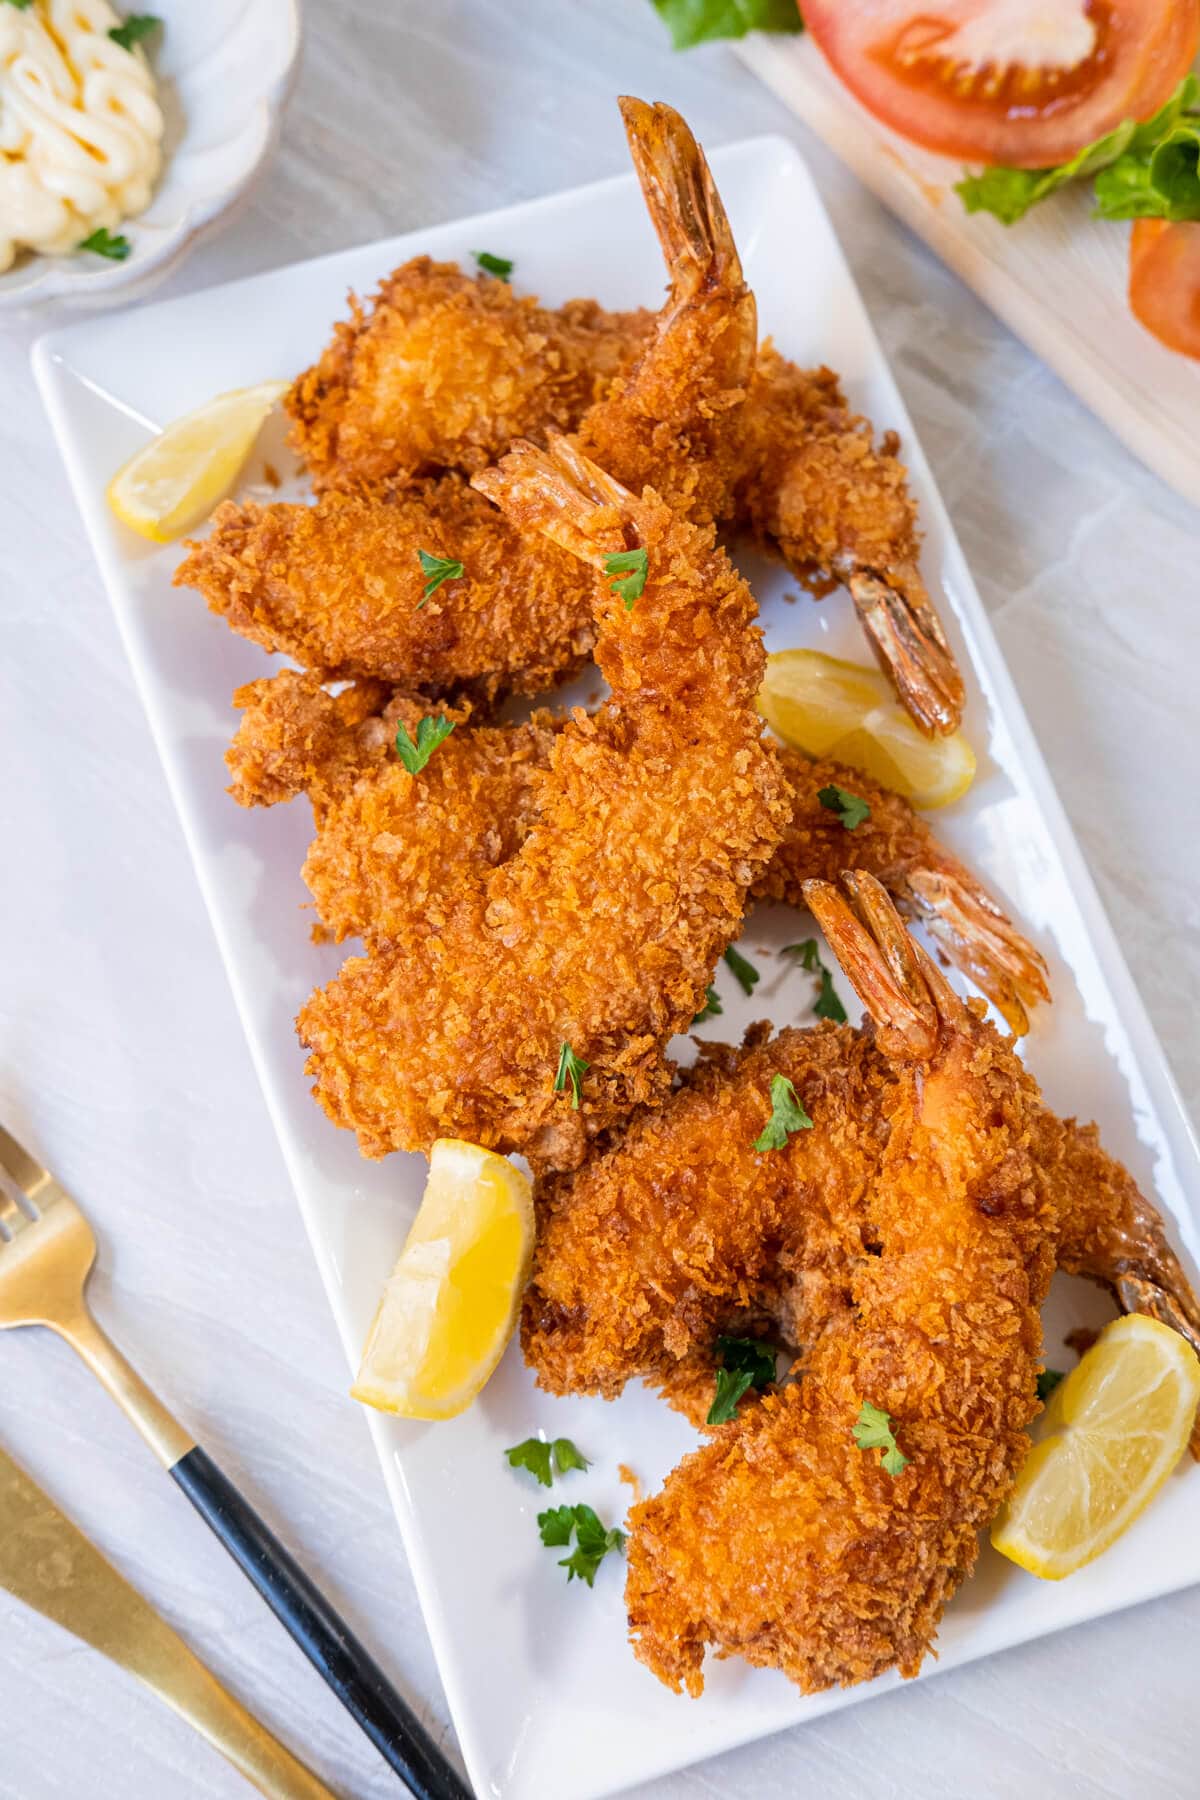 Six golden-fried shrimp on a white platter next to lemon wedges.